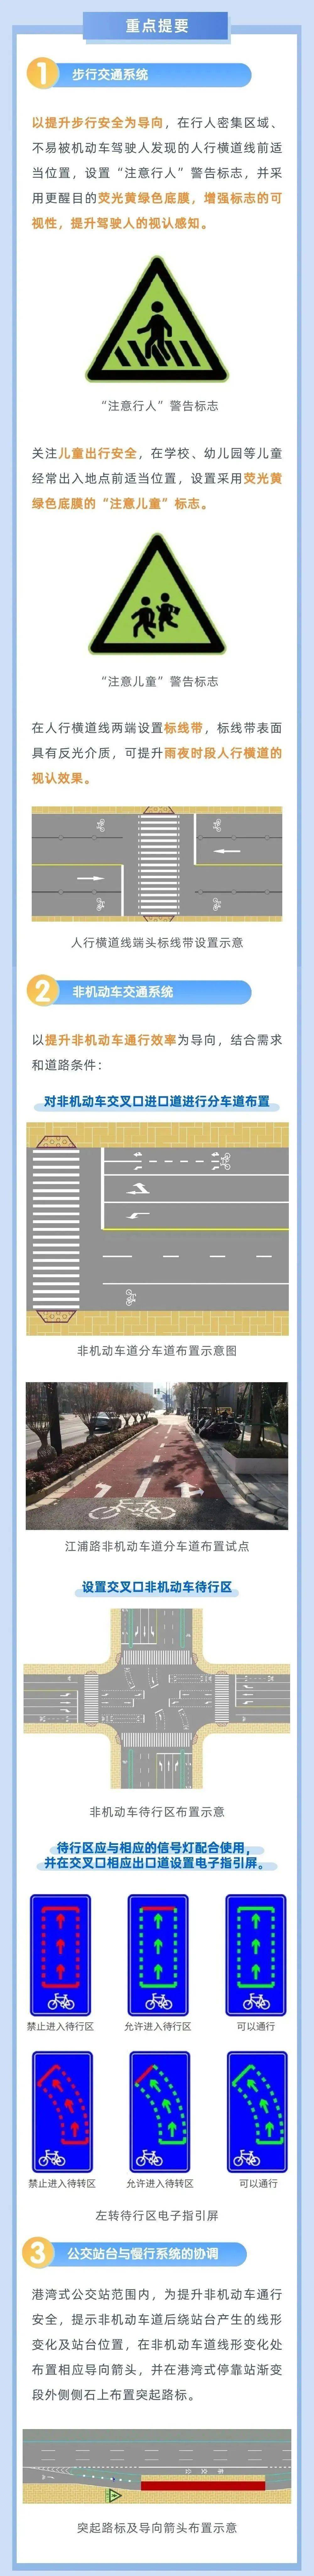 上海这些交通警告标志变了!速学→